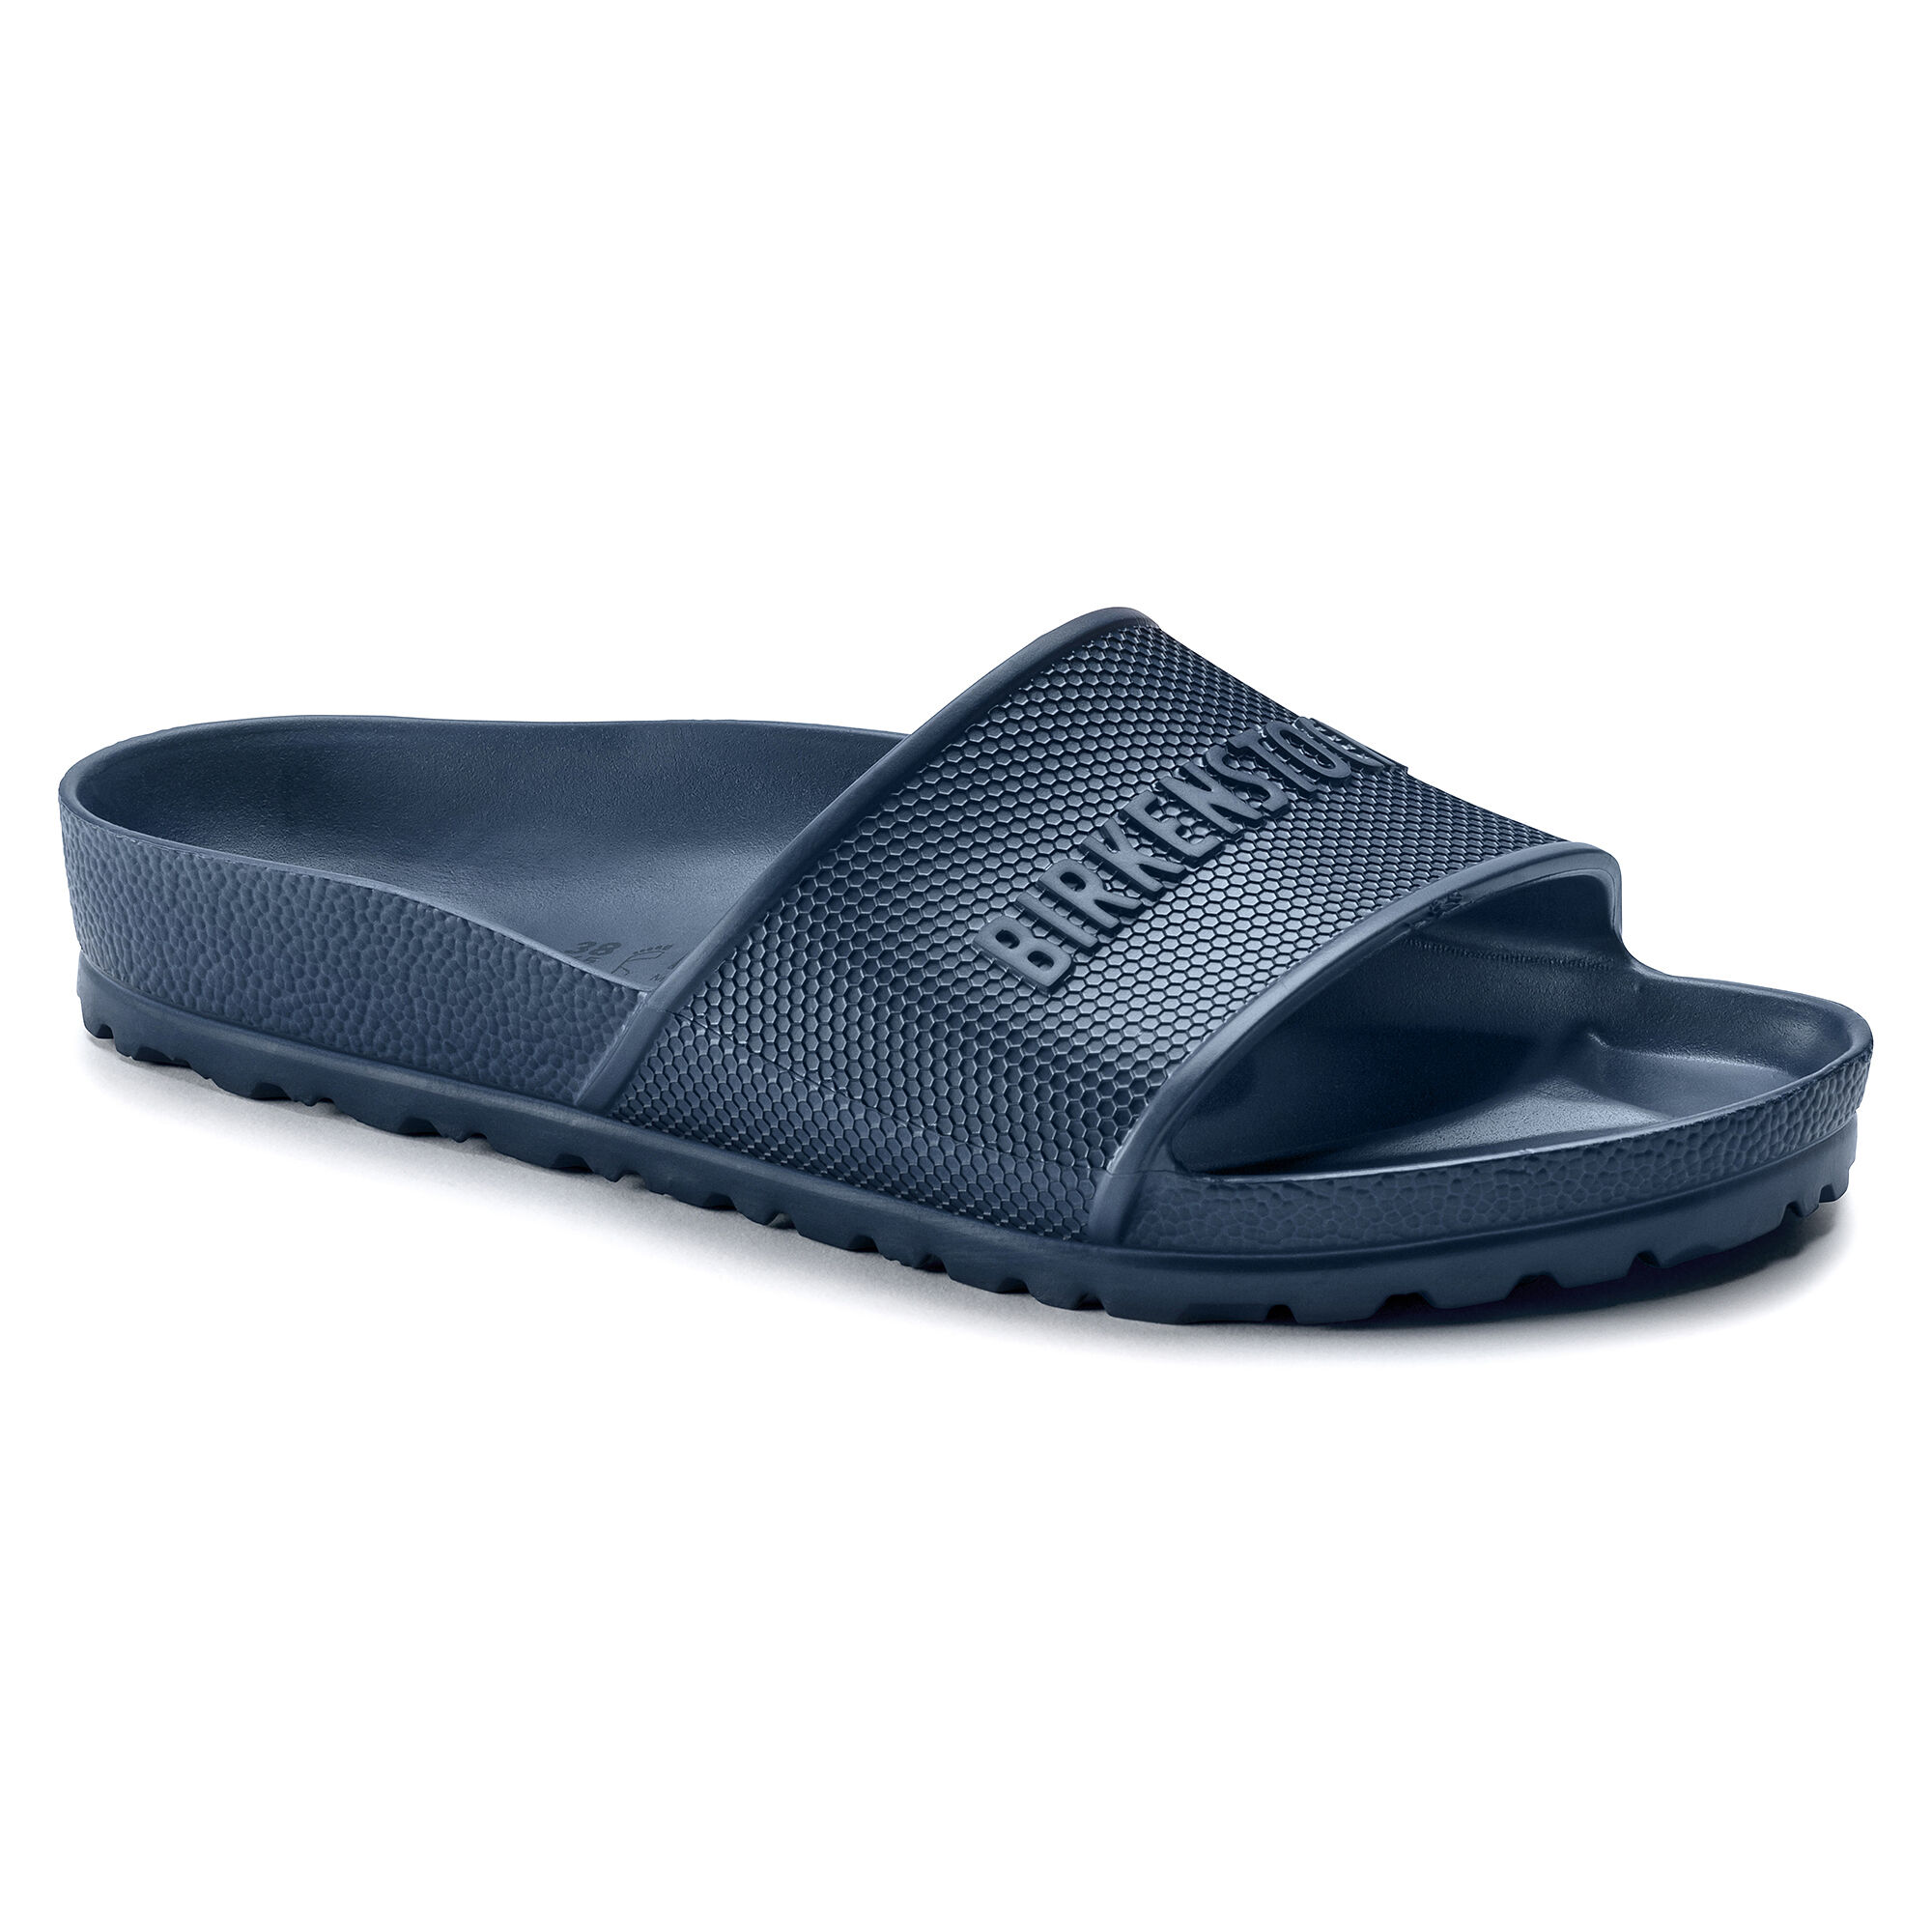 birkis waterproof sandals